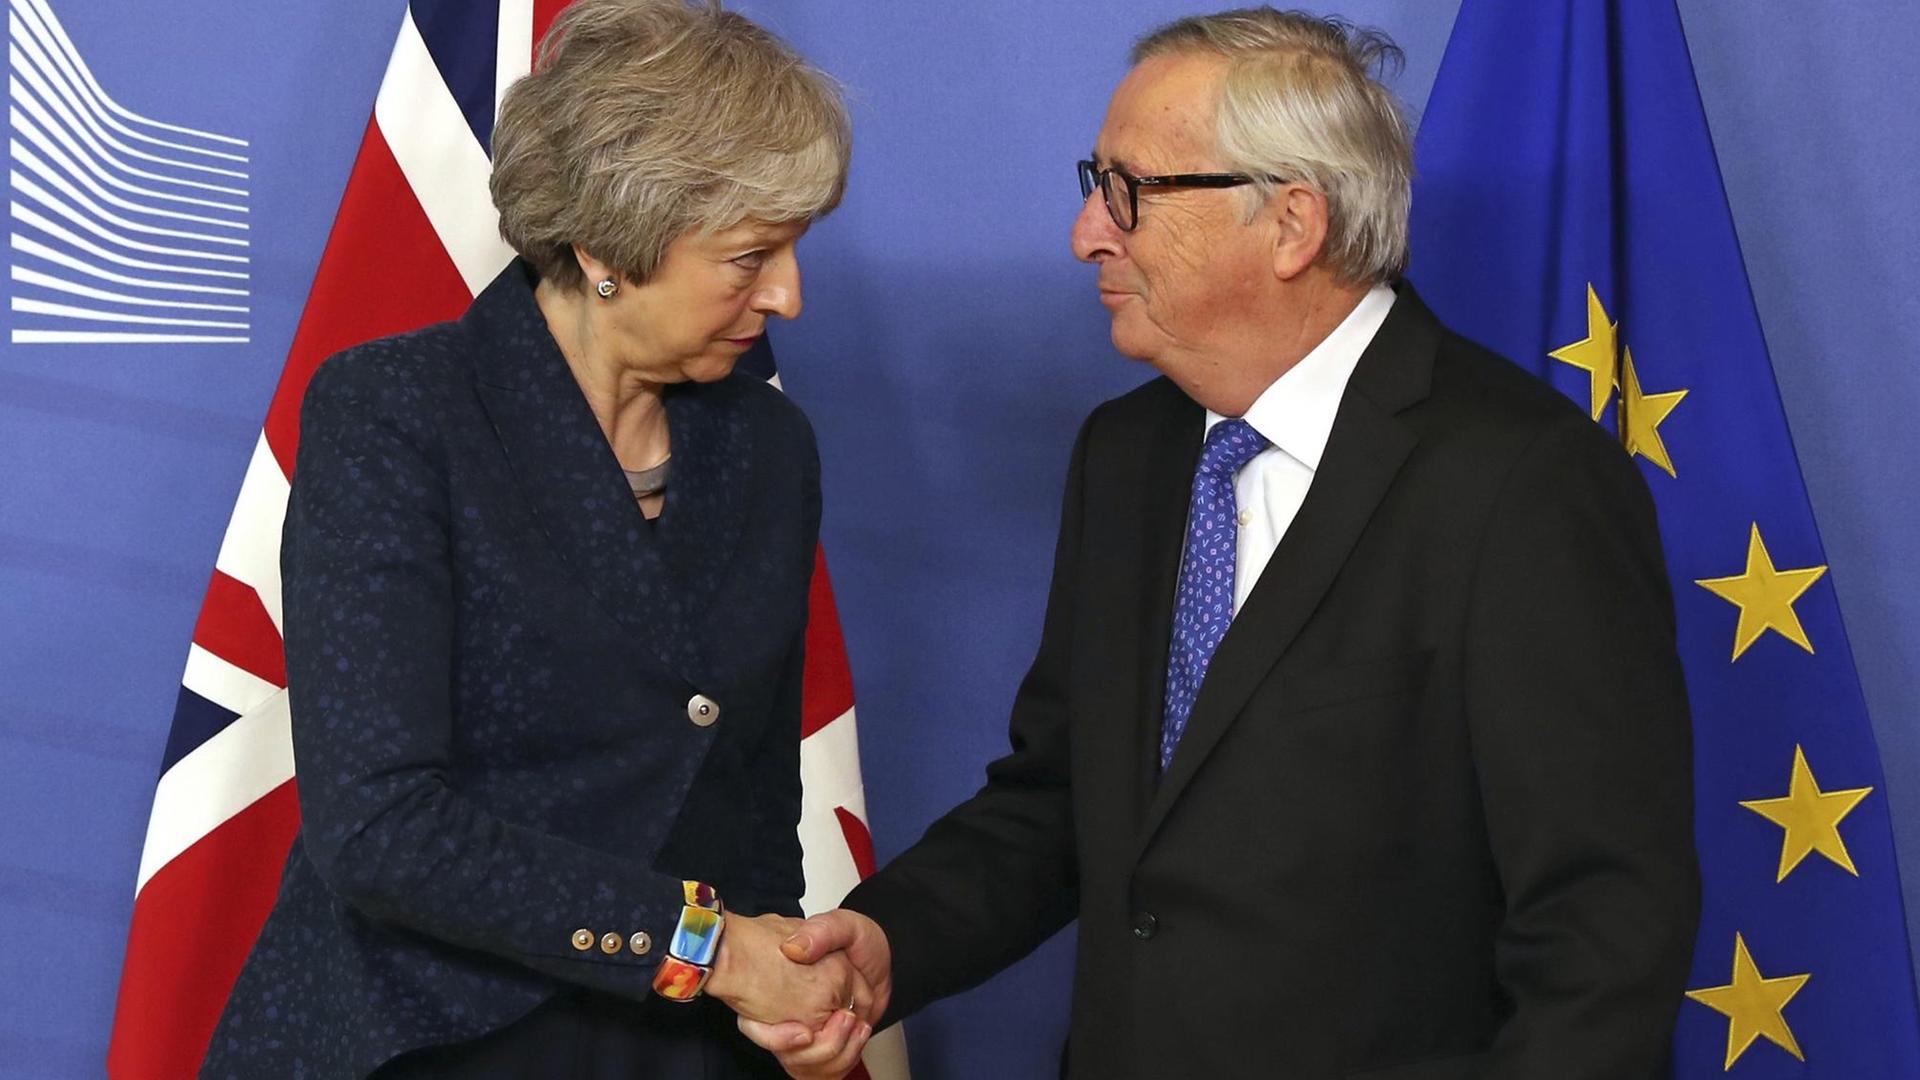 Die britische Premierministerin May schüttelt dem EU-Kommissionspräsidenten Juncker die Hand.